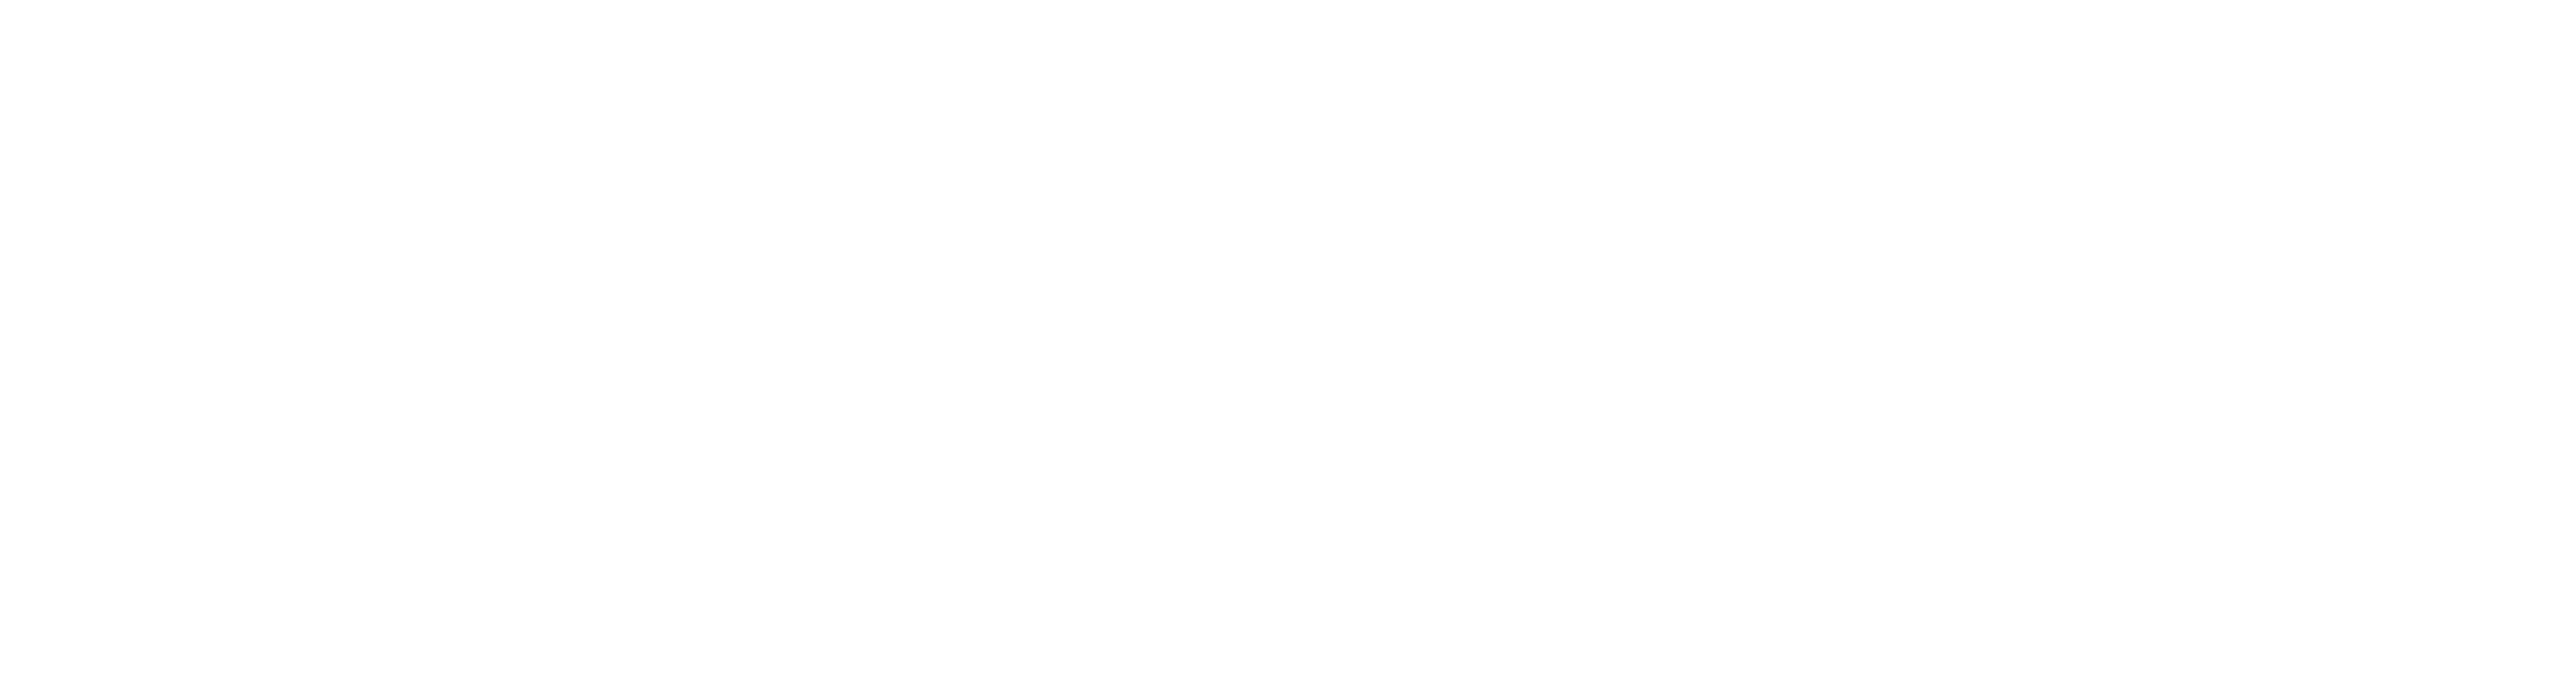 passcom-express-w